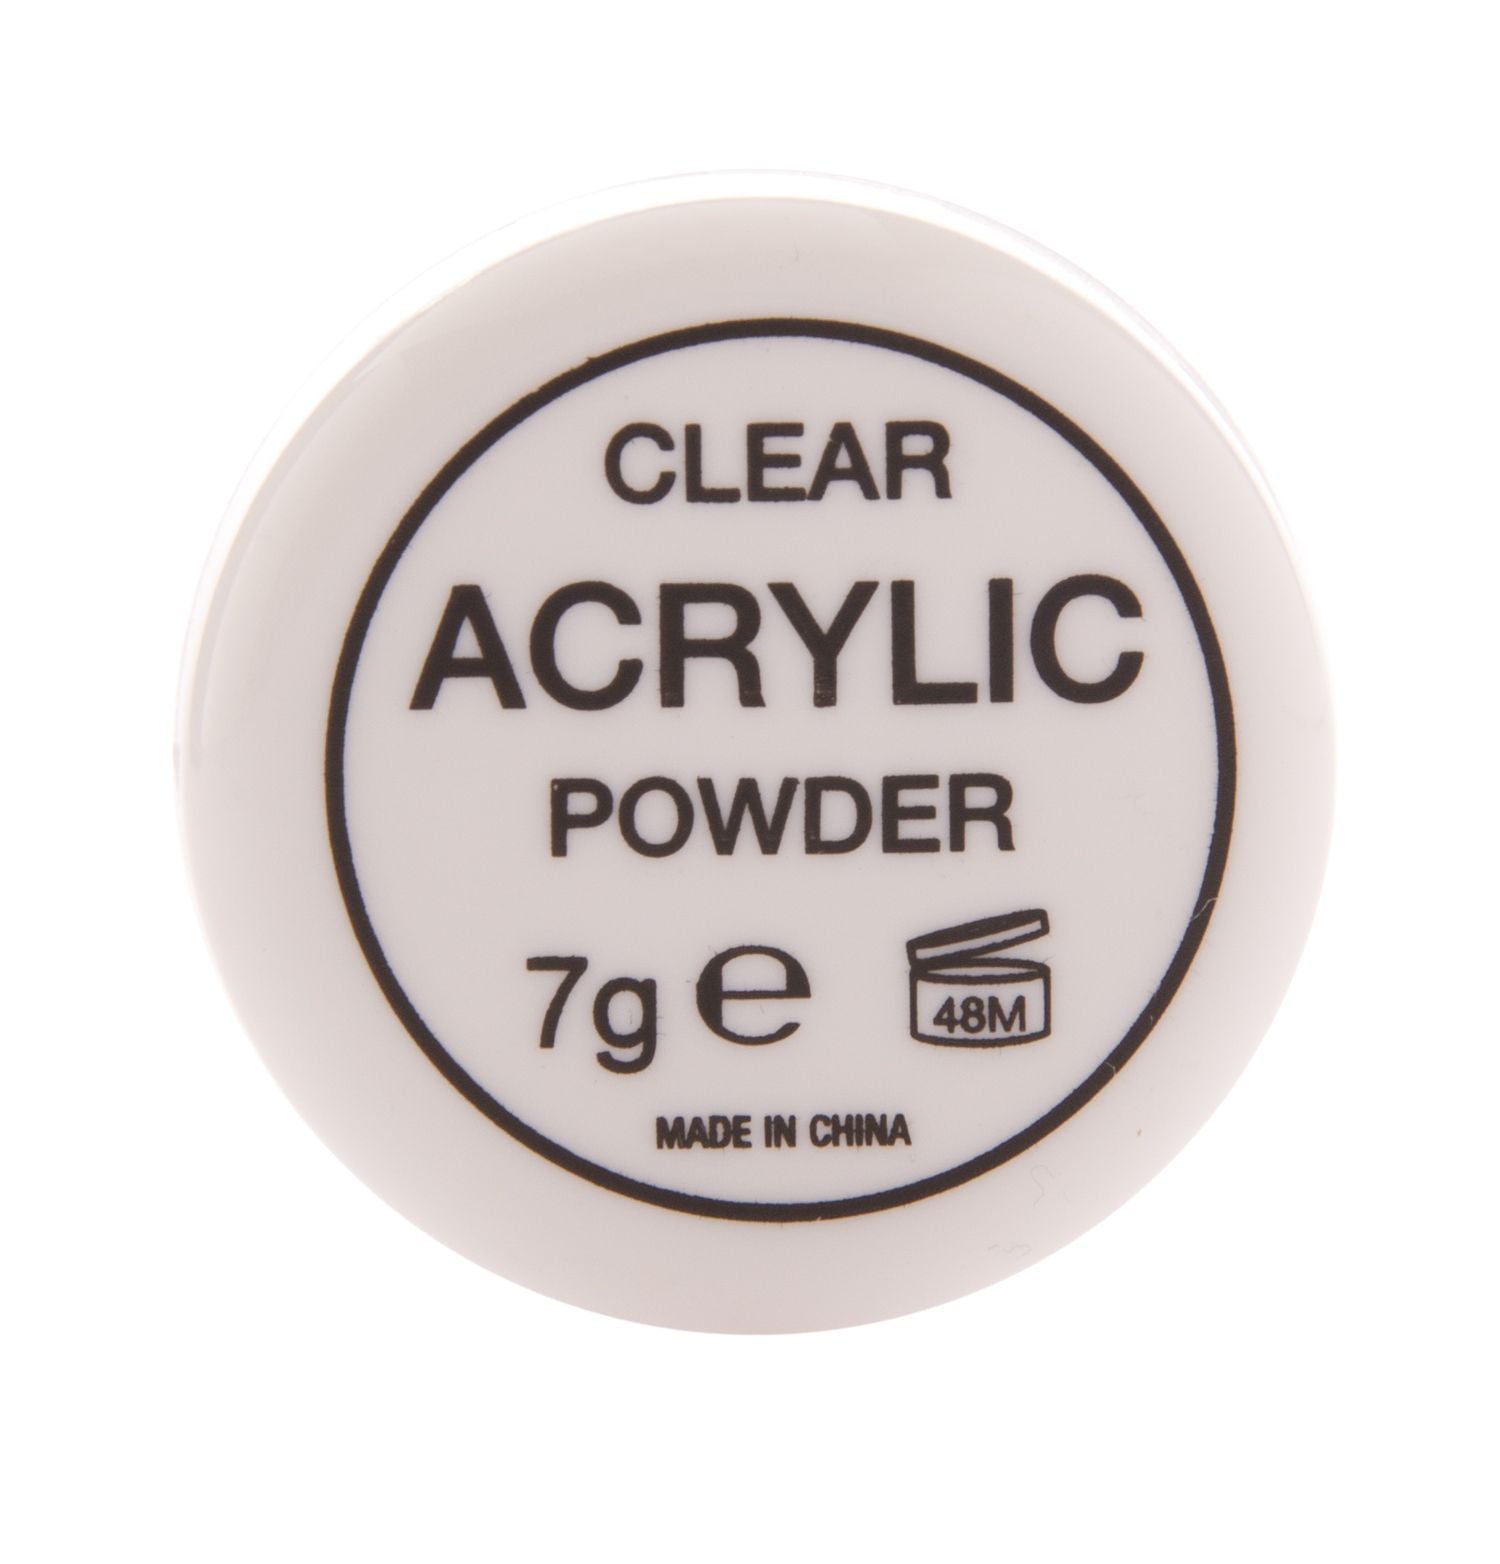 7g pot of Acrylic Nail Powder